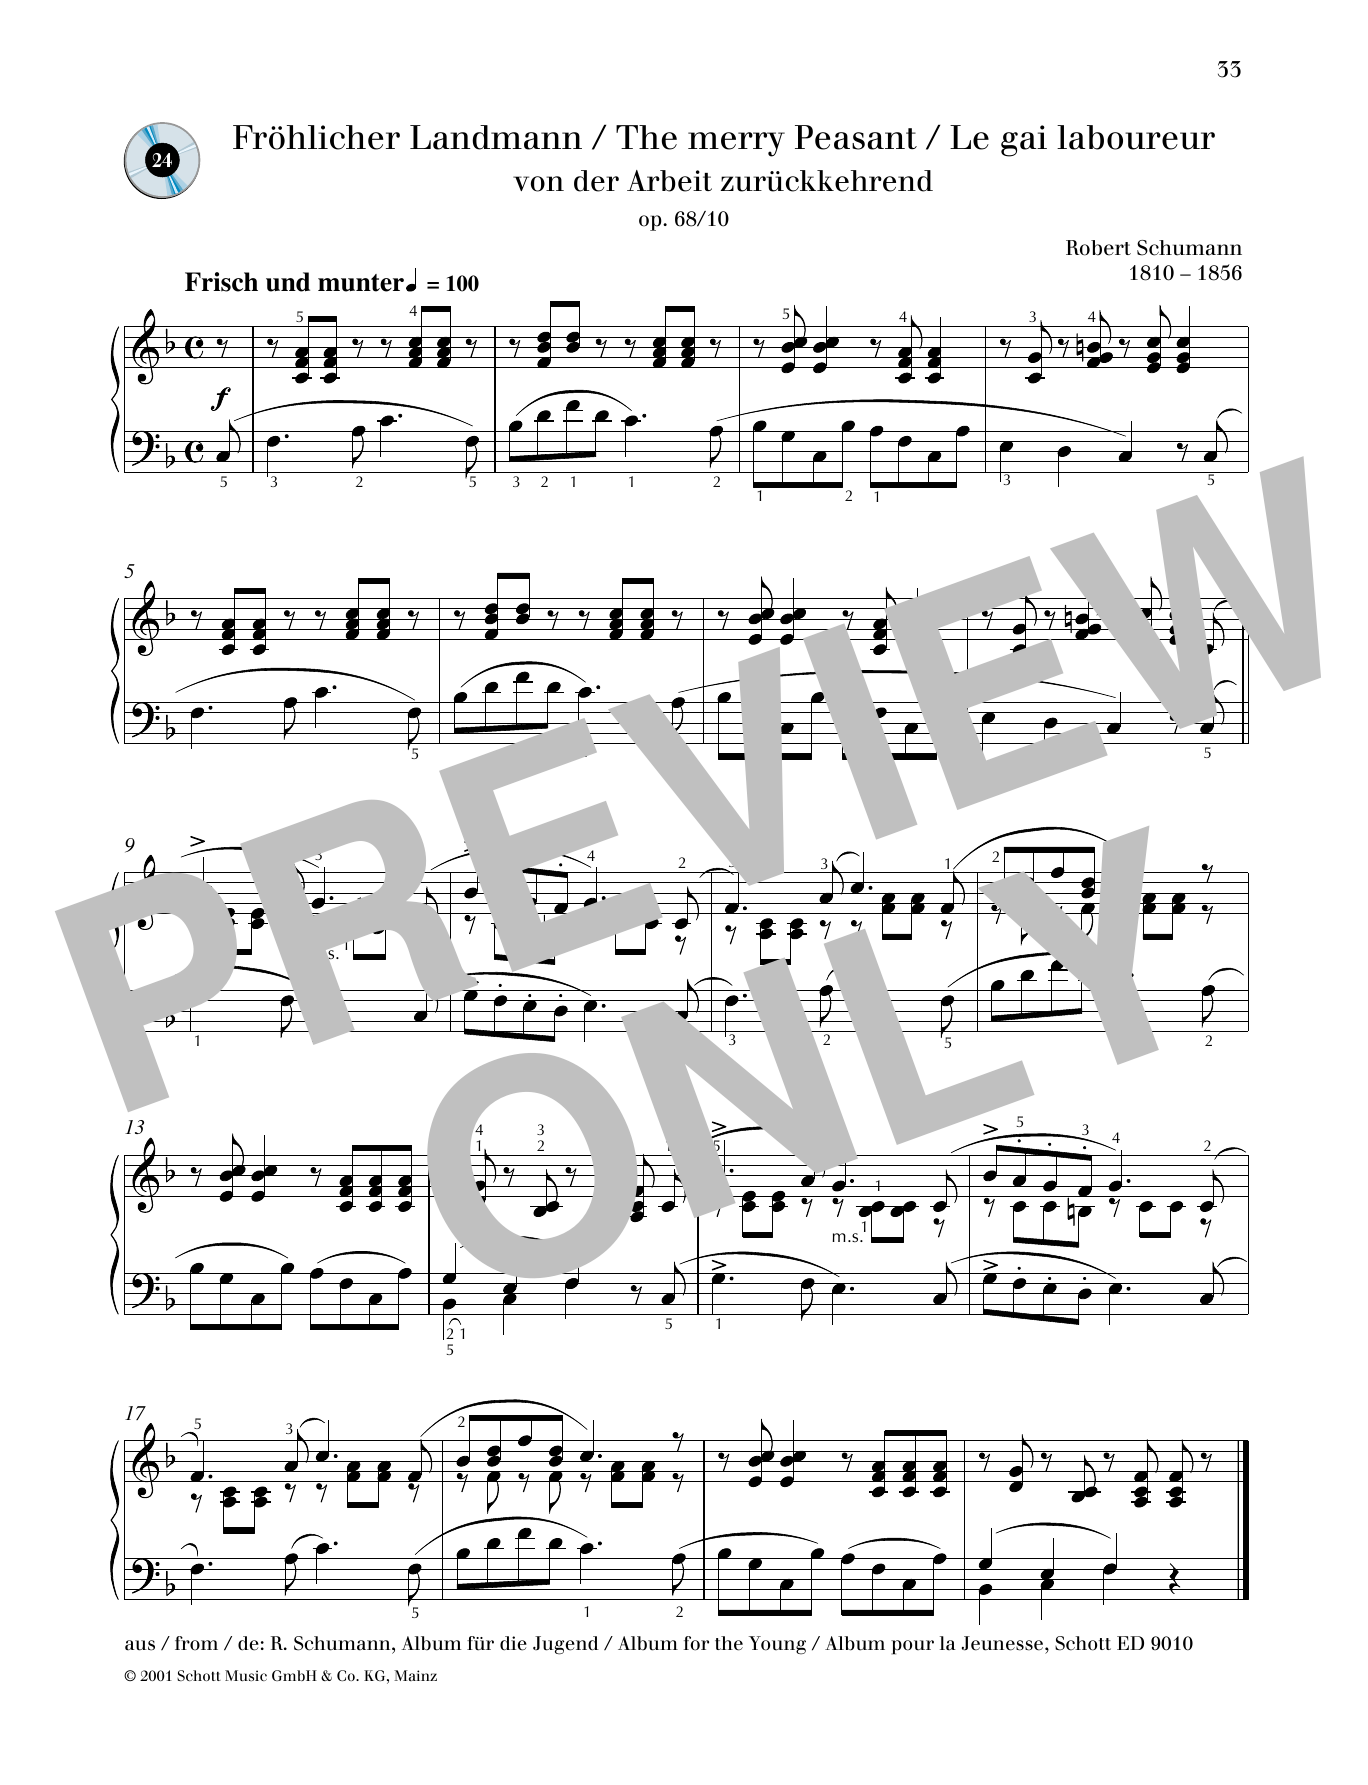 Download Robert Schumann The Merry Peasant Sheet Music